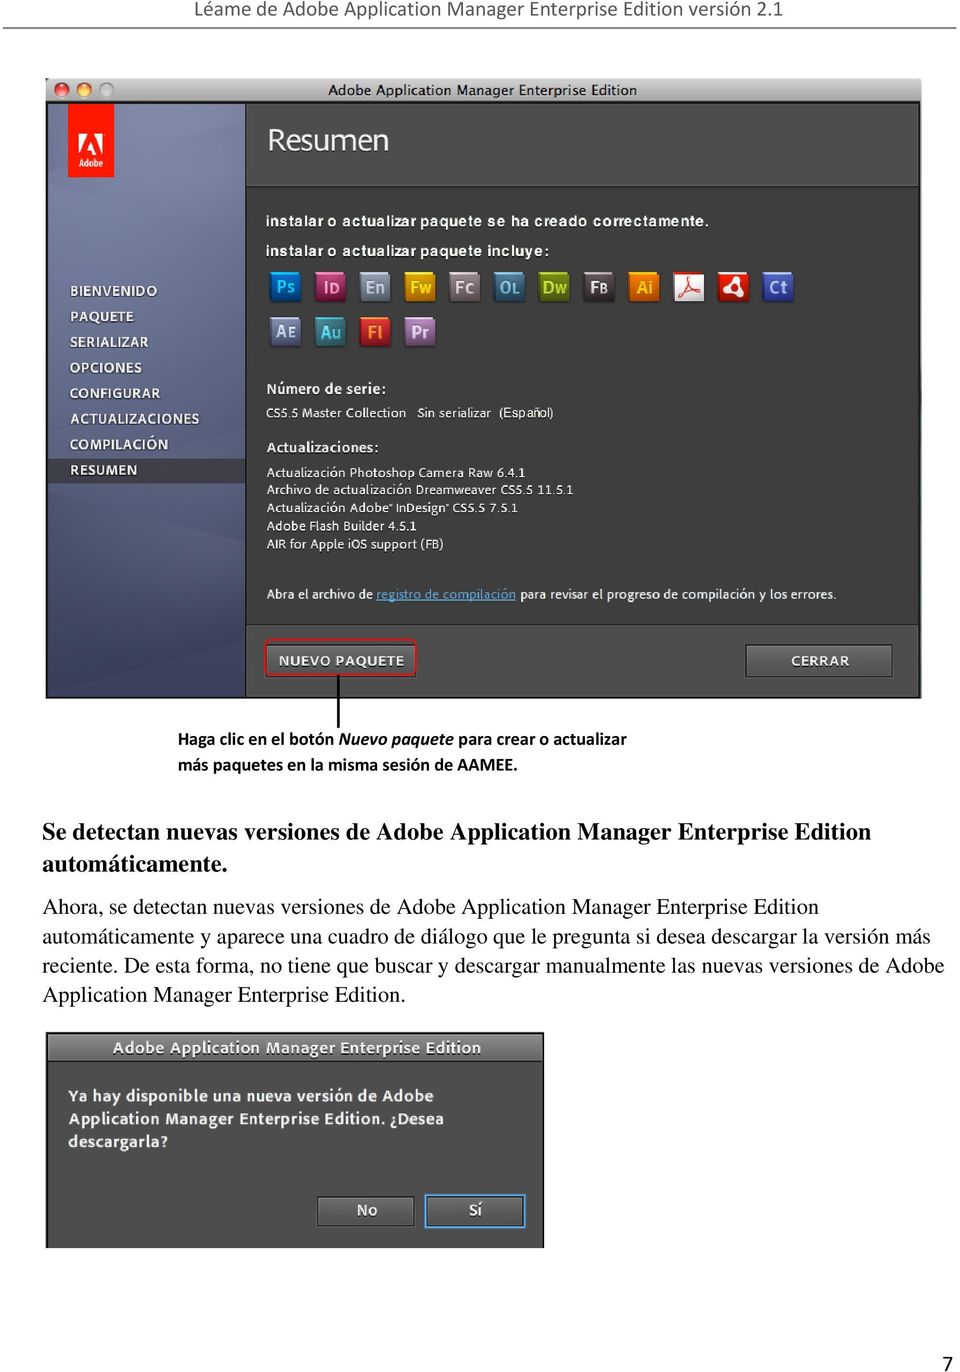 Ahora, se detectan nuevas versiones de Adobe Application Manager Enterprise Edition automáticamente y aparece una cuadro de